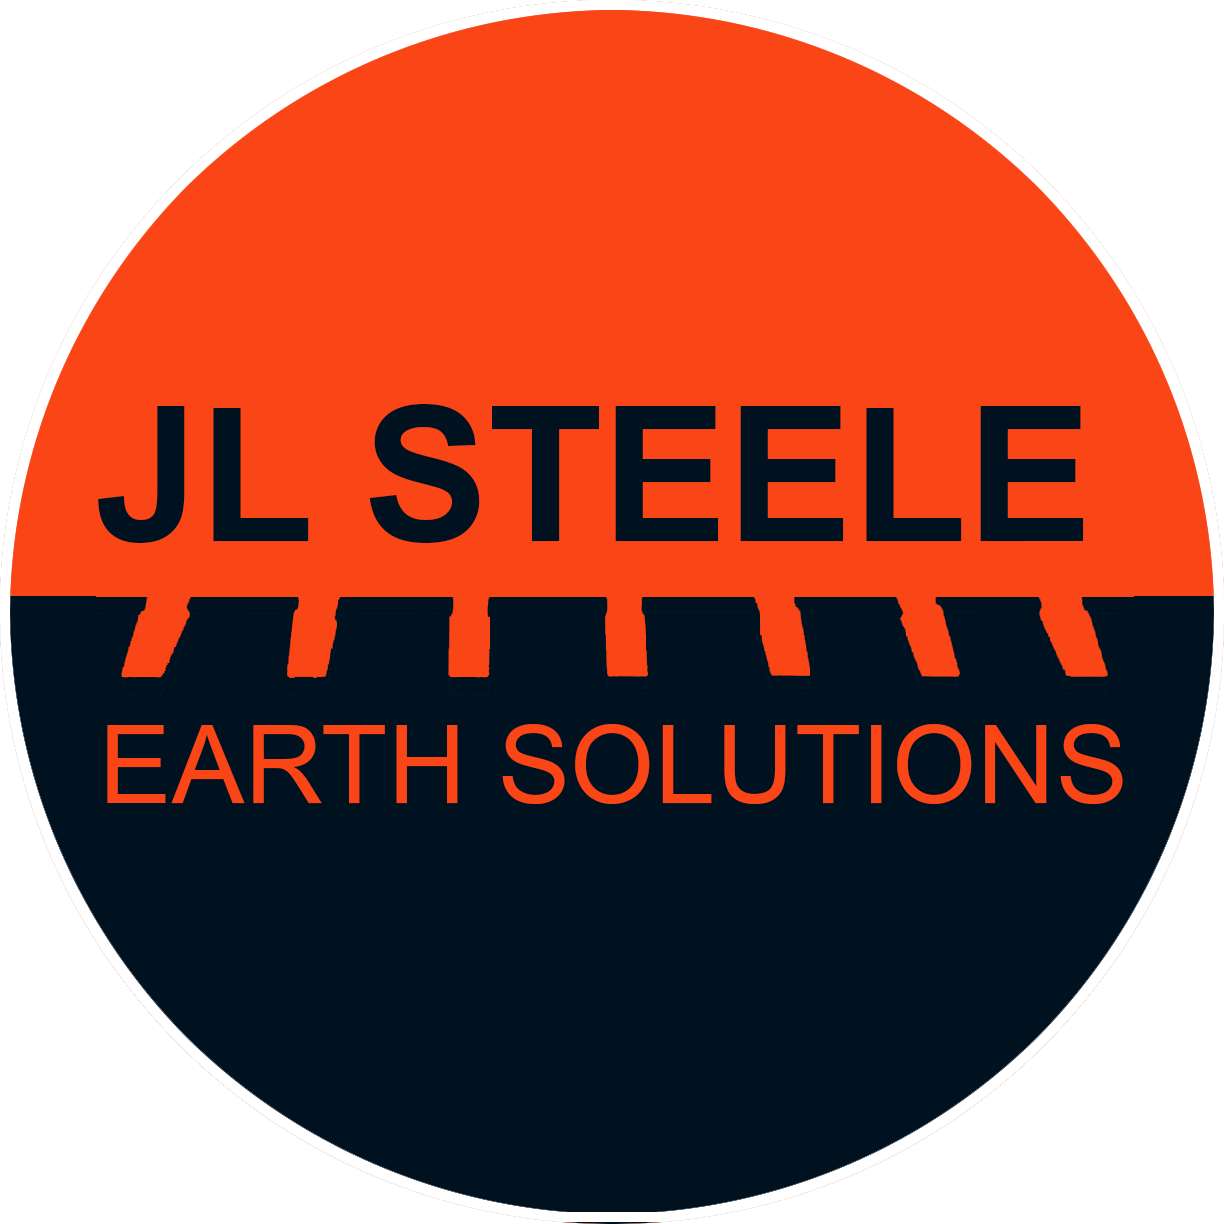 J.L. Steele